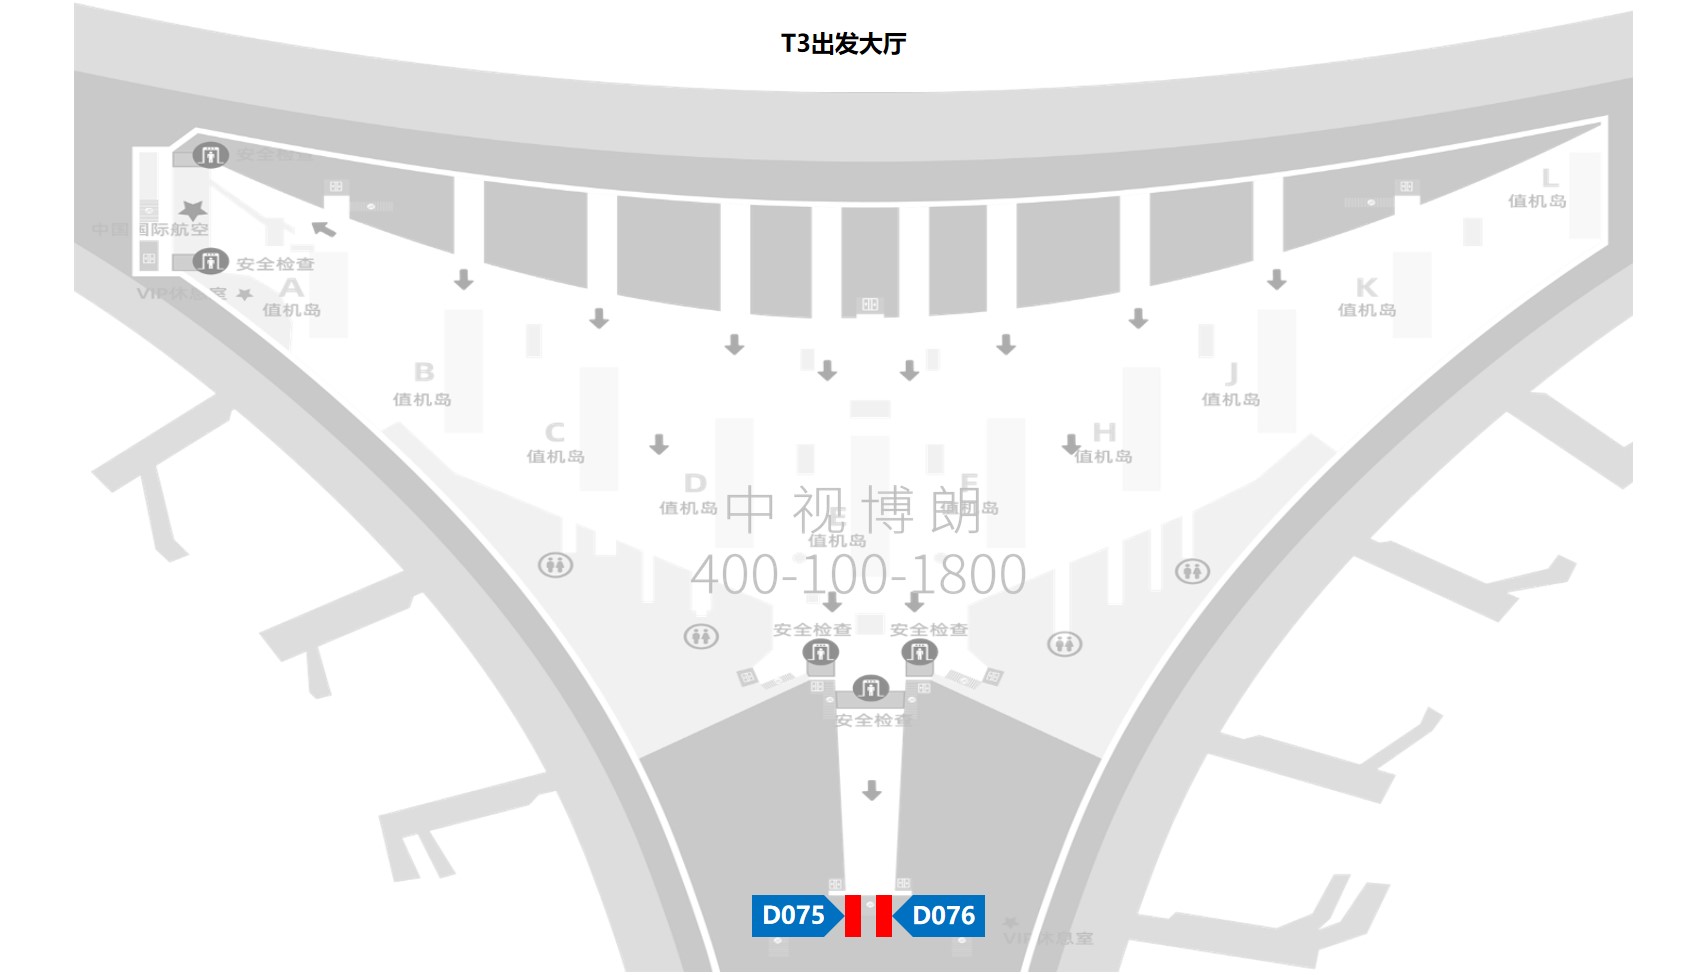 北京首都机场广告-T3国内国际出发电梯灯箱套装位置图